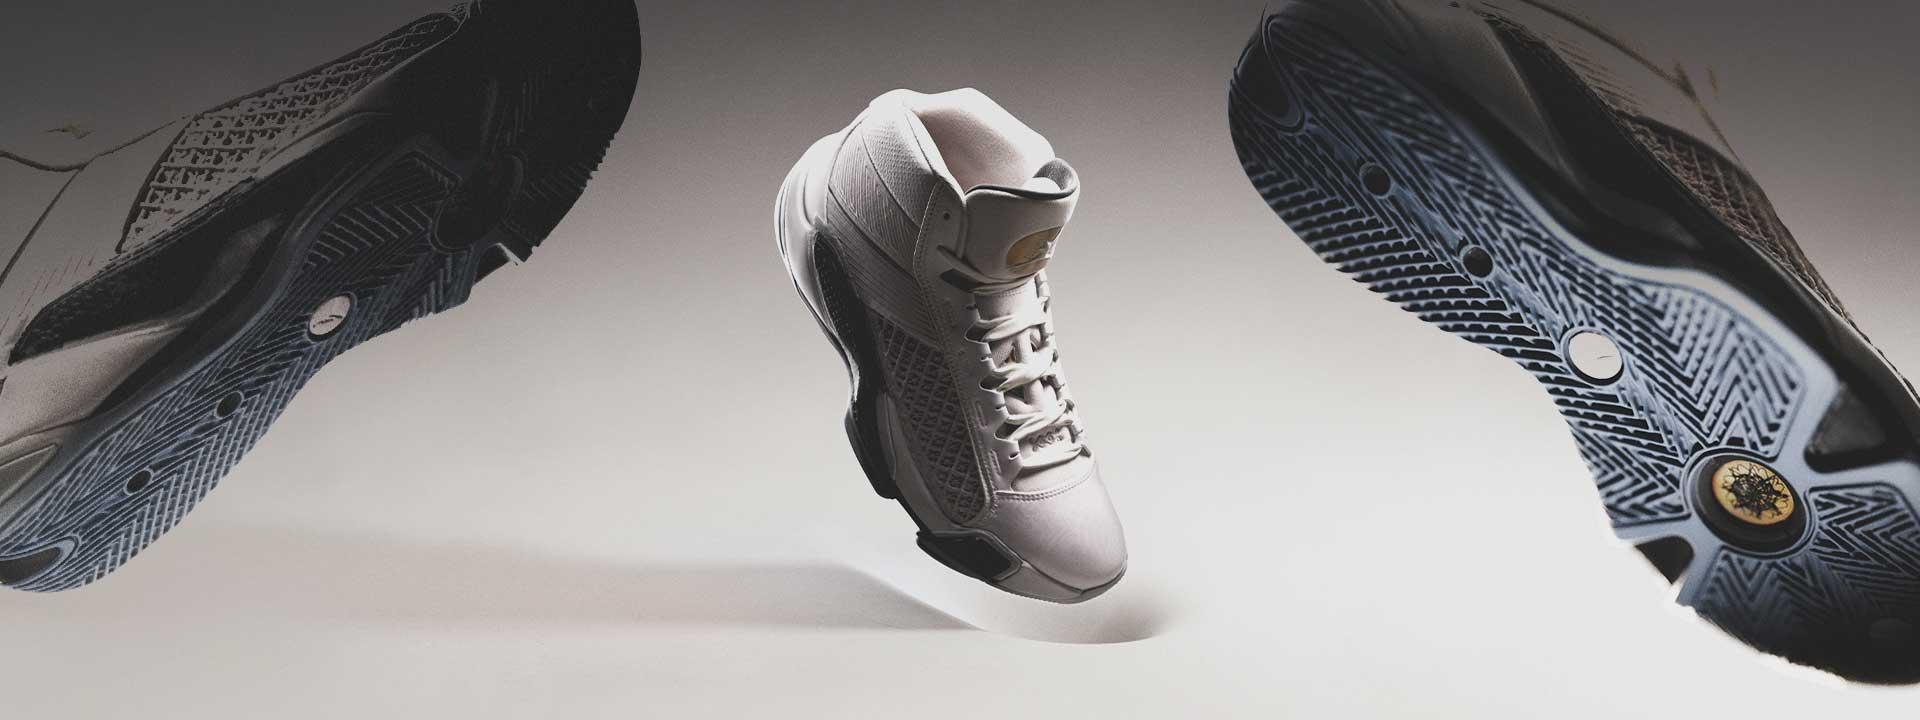 Air Jordan 38 Fiba basketball shoes